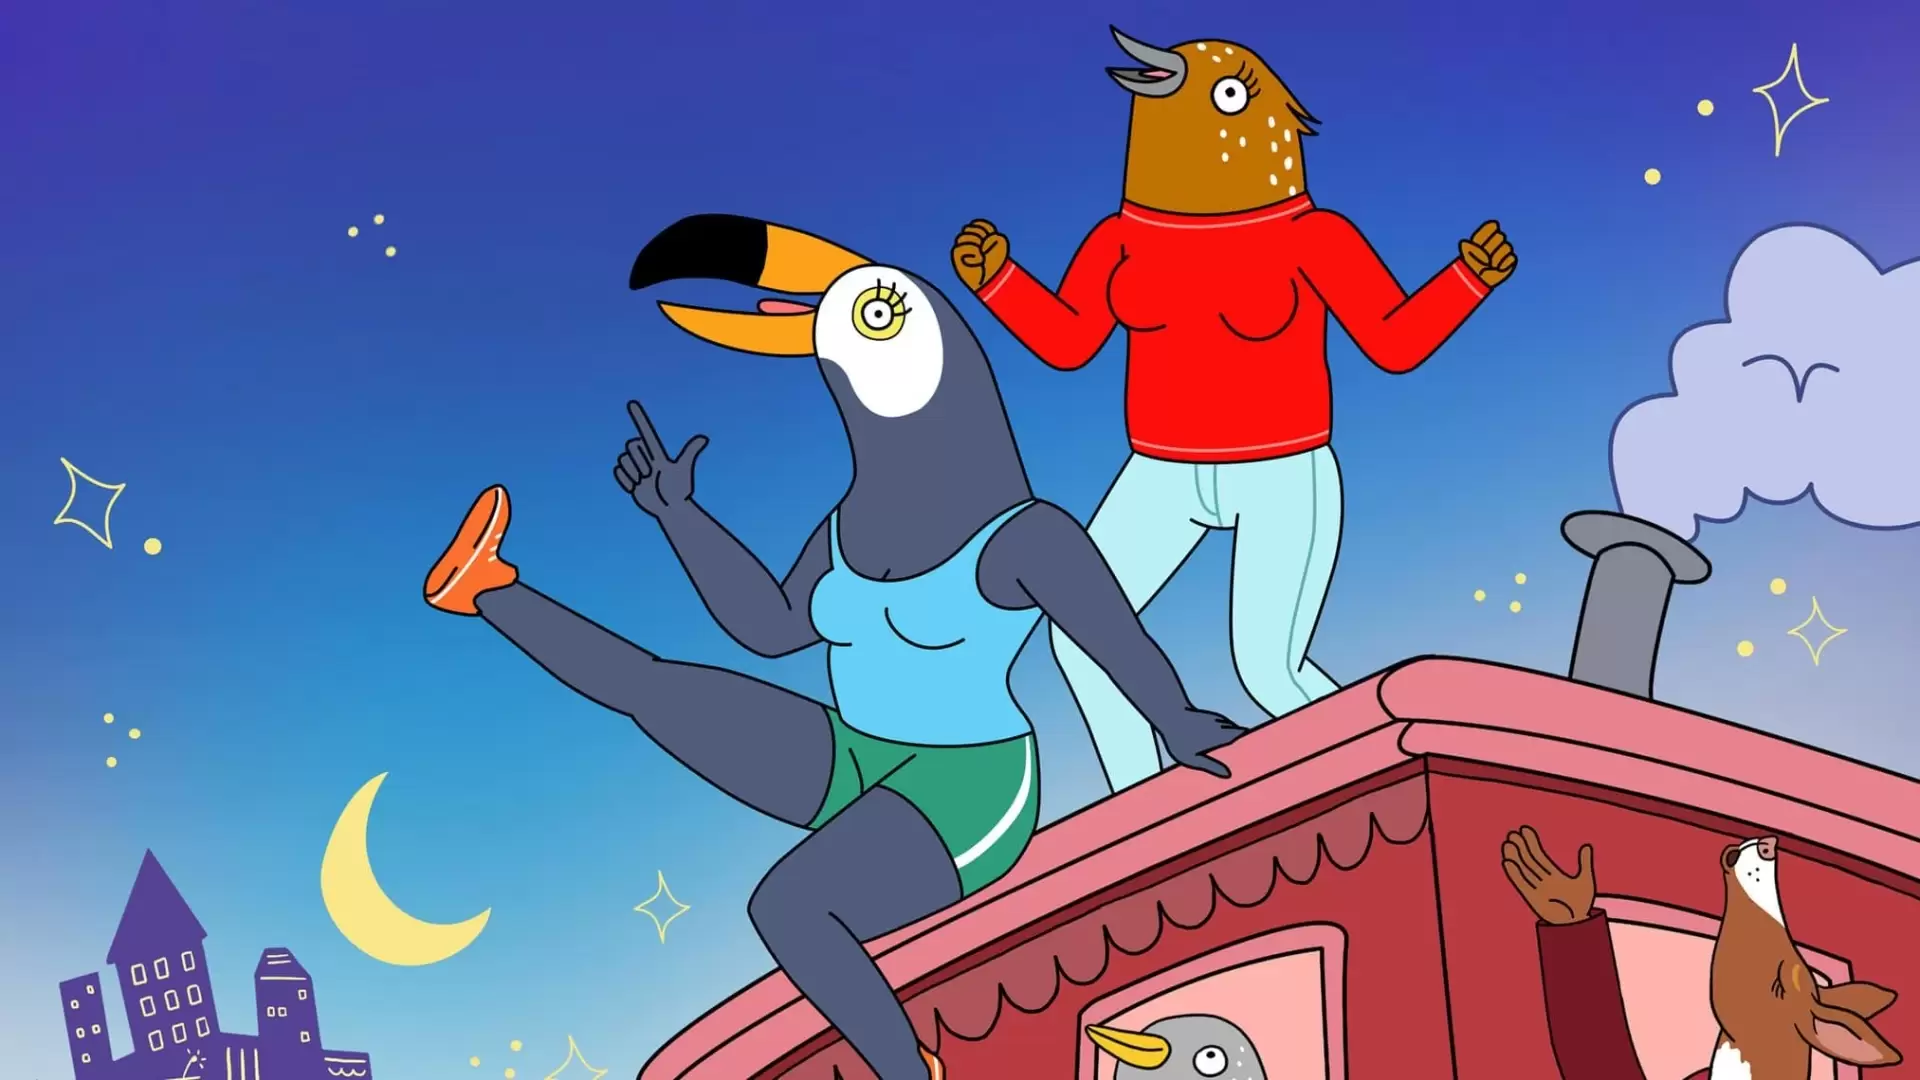 دانلود انیمیشن Tuca & Bertie 2019 (توکا و برتی) با تماشای آنلاین